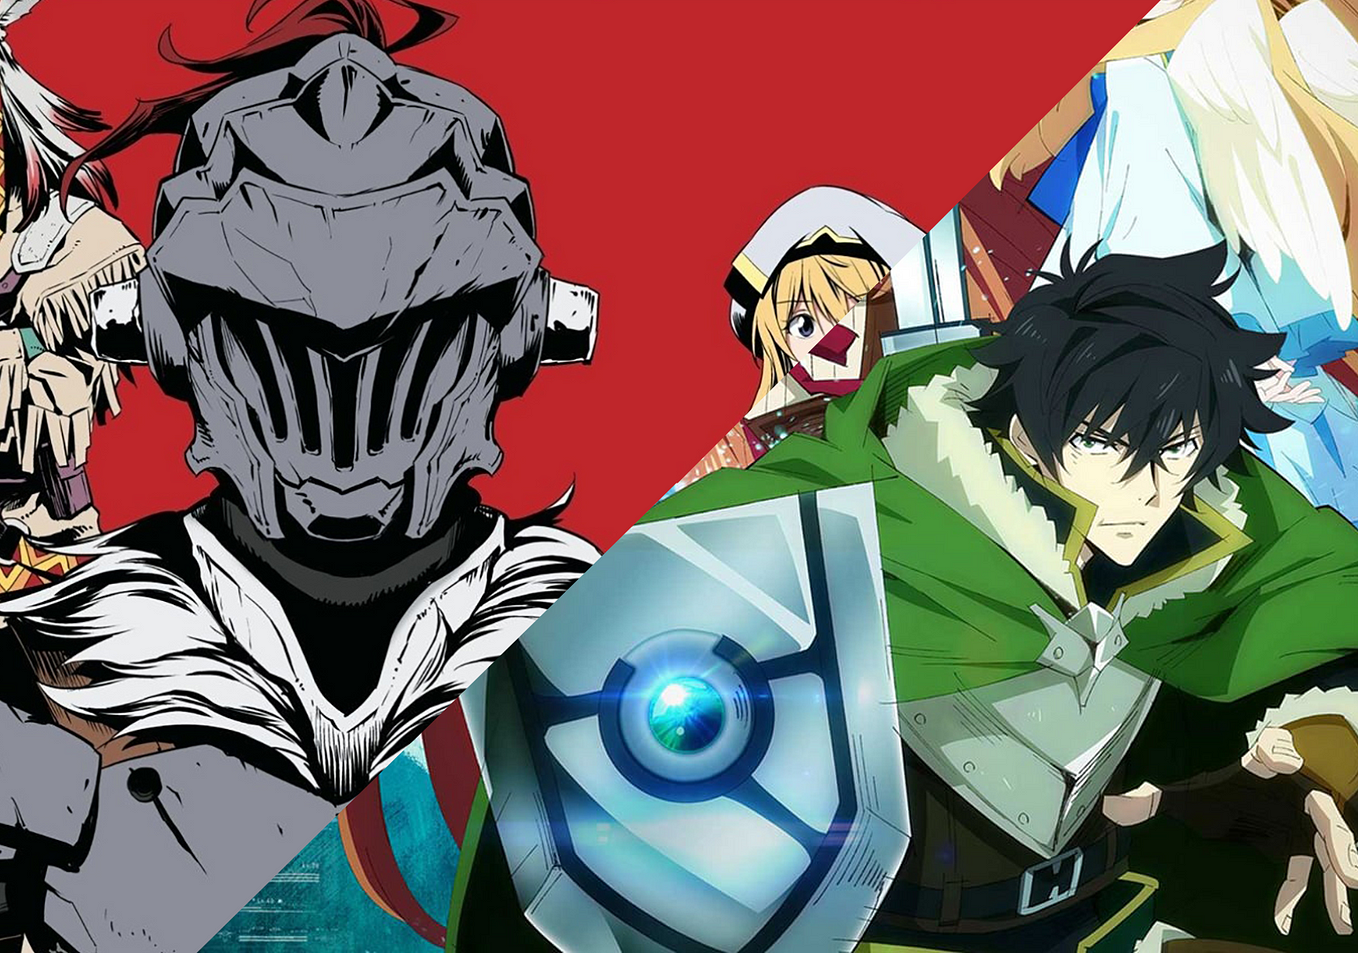 Saikô Animes on X: - Segunda temporada do anime de GOBLIN SLAYER destaca a  Fada Arqueira do grupo. Personagem ganha seu merecido destaque com visual  renovado estampando uma nova arte e trailer.